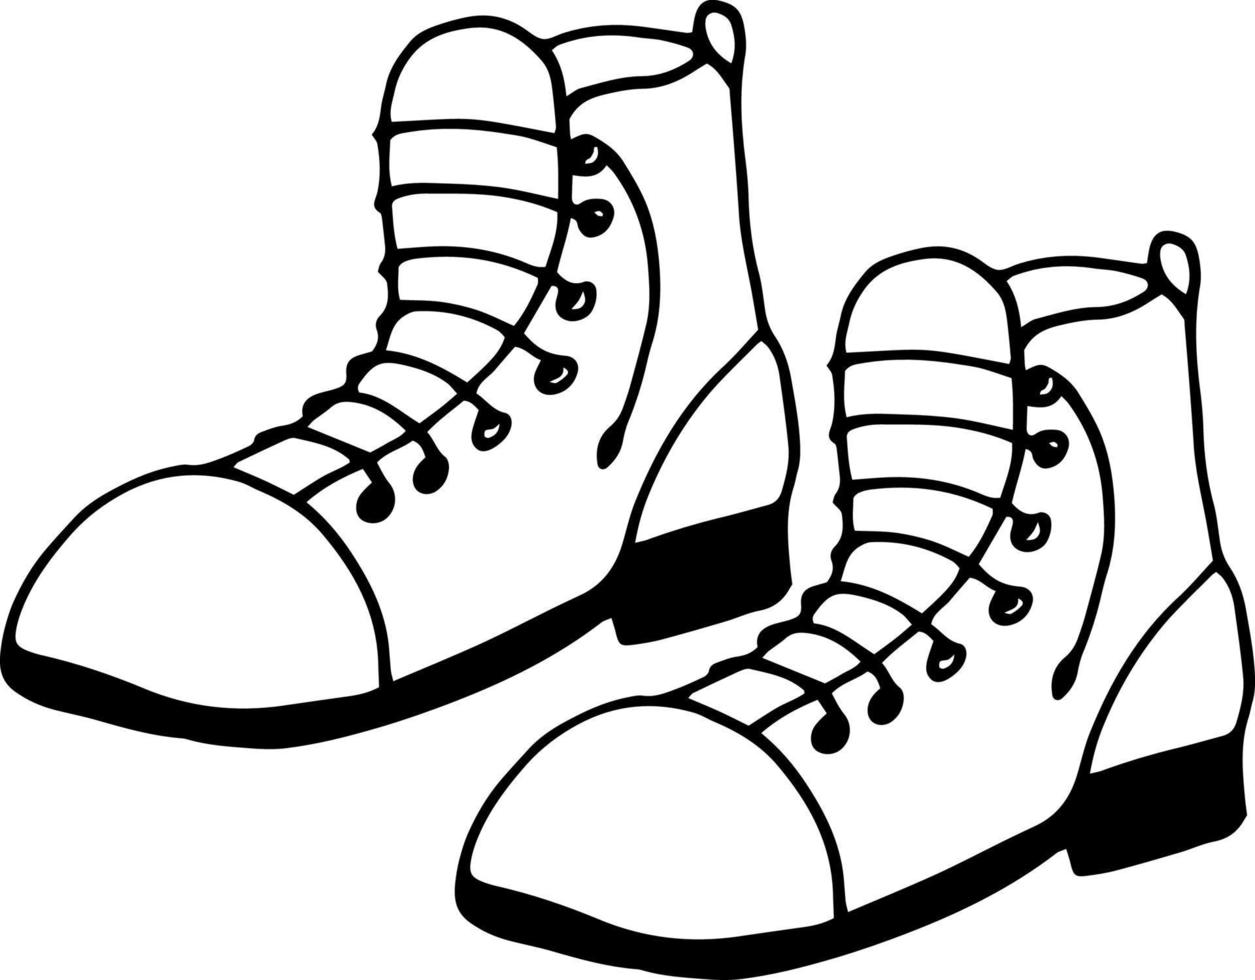 icona di stivali. scarabocchio disegnato a mano. , scarpe da trekking monocromatiche minimalismo scandinavo e nordico vettore